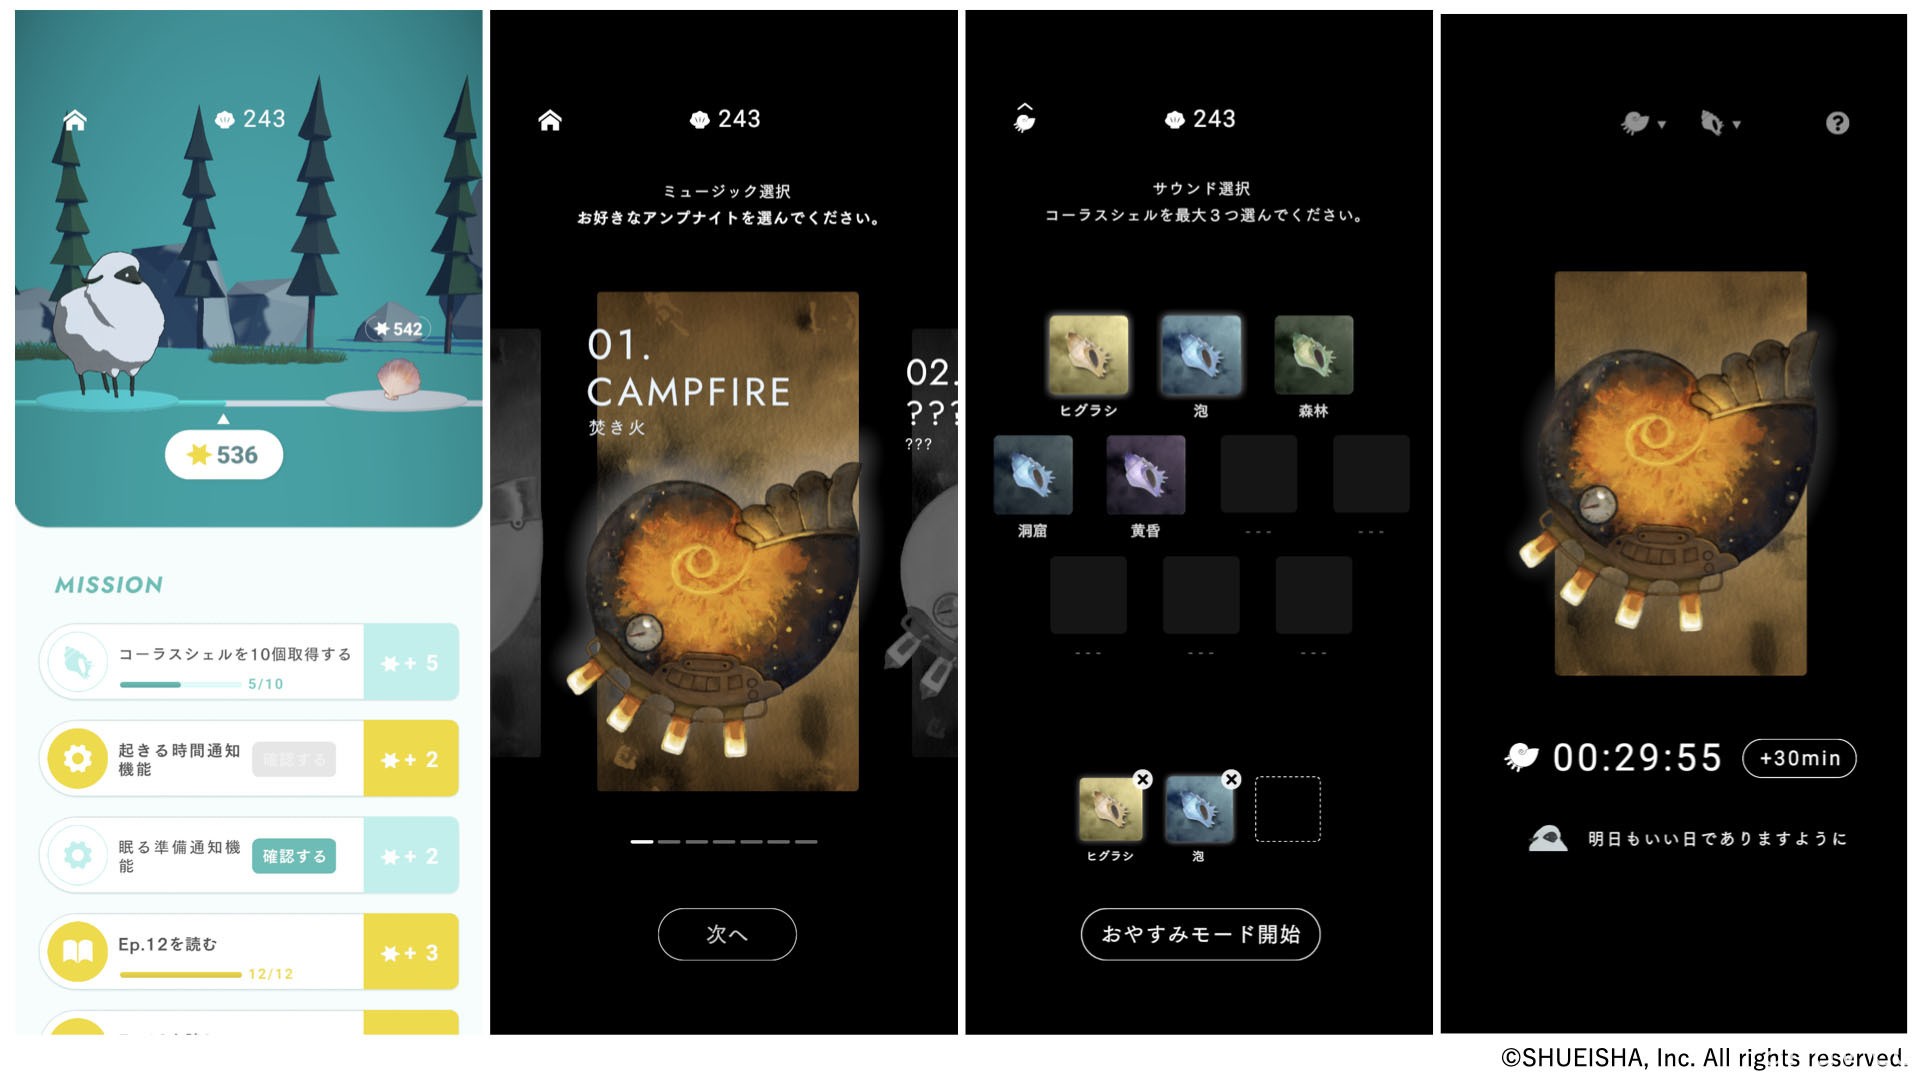 《夜羊之森》在日推出 入睡後能解鎖全新故事的睡眠紀錄 App